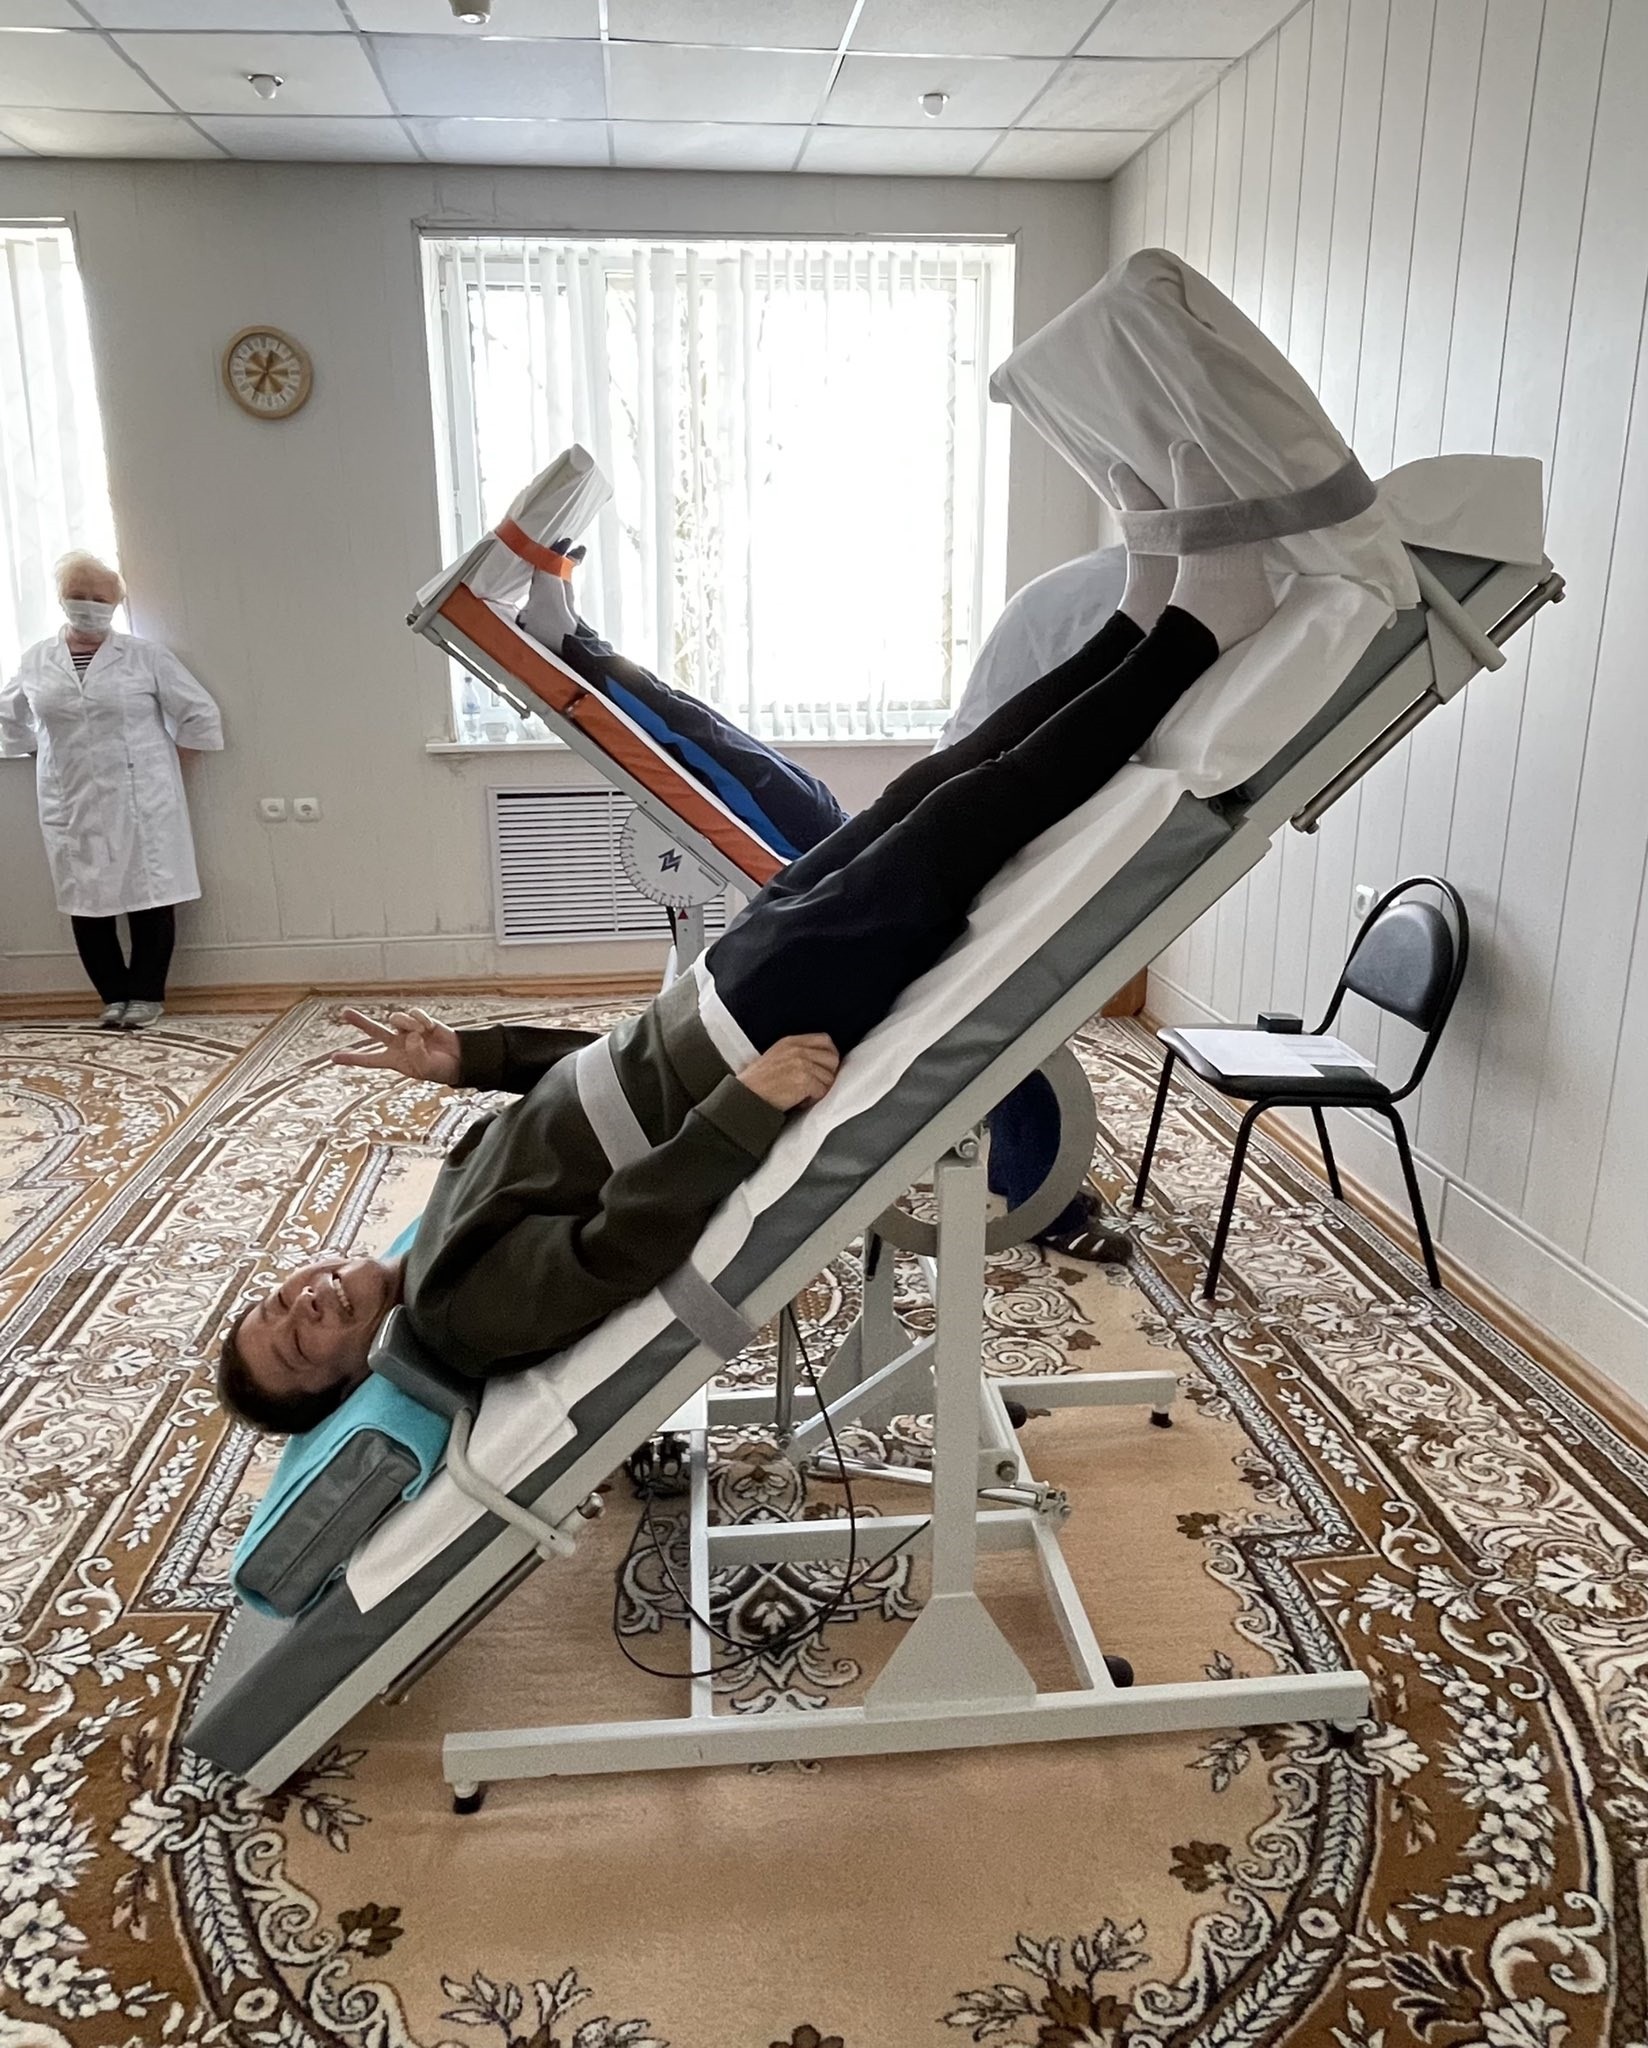 Yusaku Maezawa durante treinamento antes de ir ao espaço  (Foto: @yousuckMZ/Twitter/Reprodução)